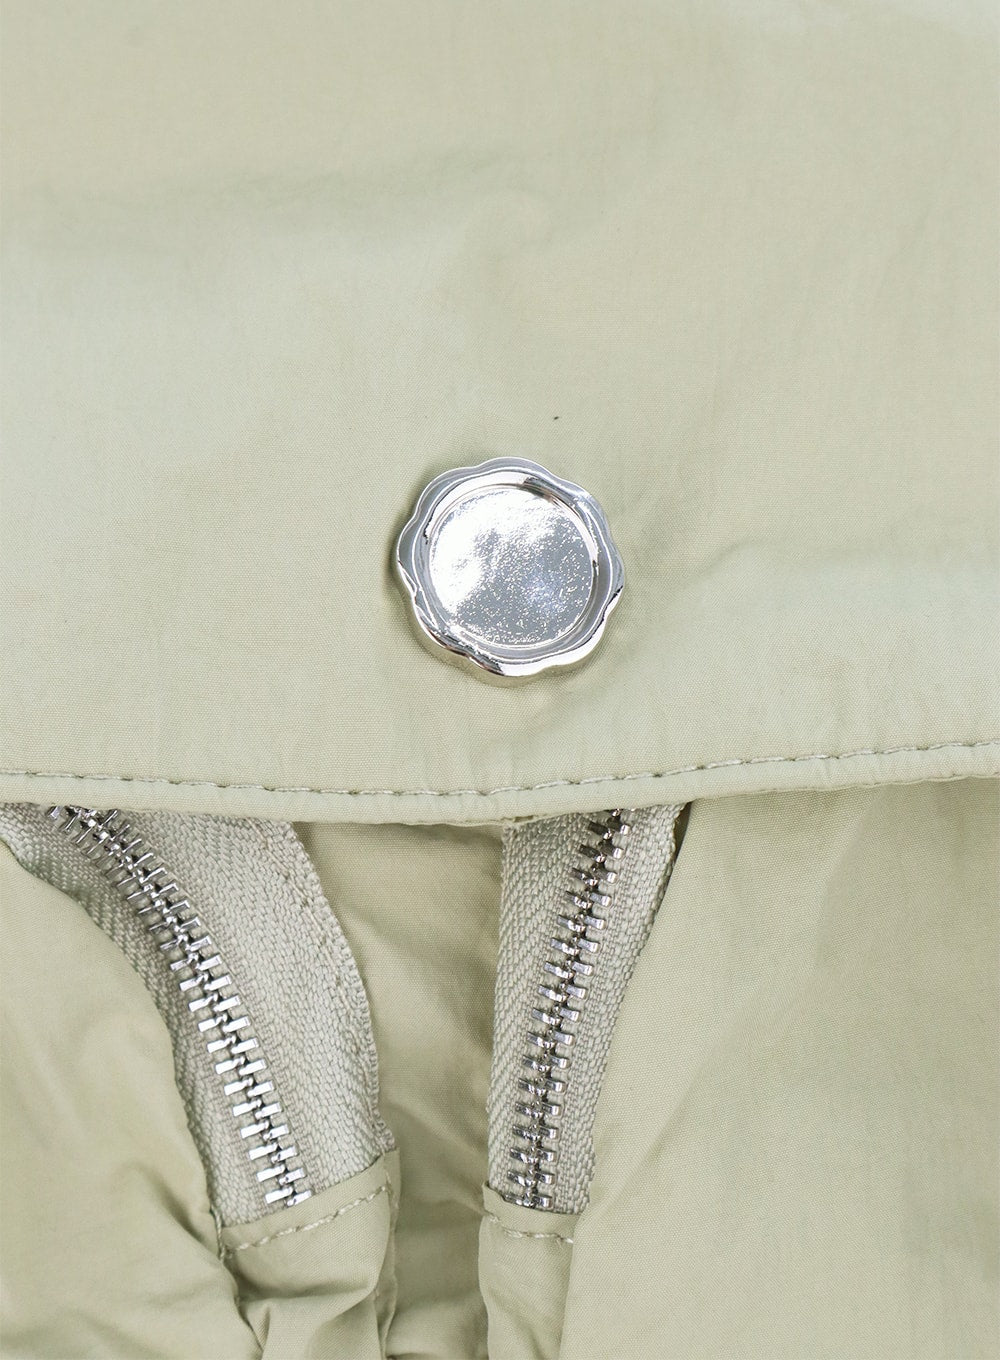 pocket-mini-backpack-cl303